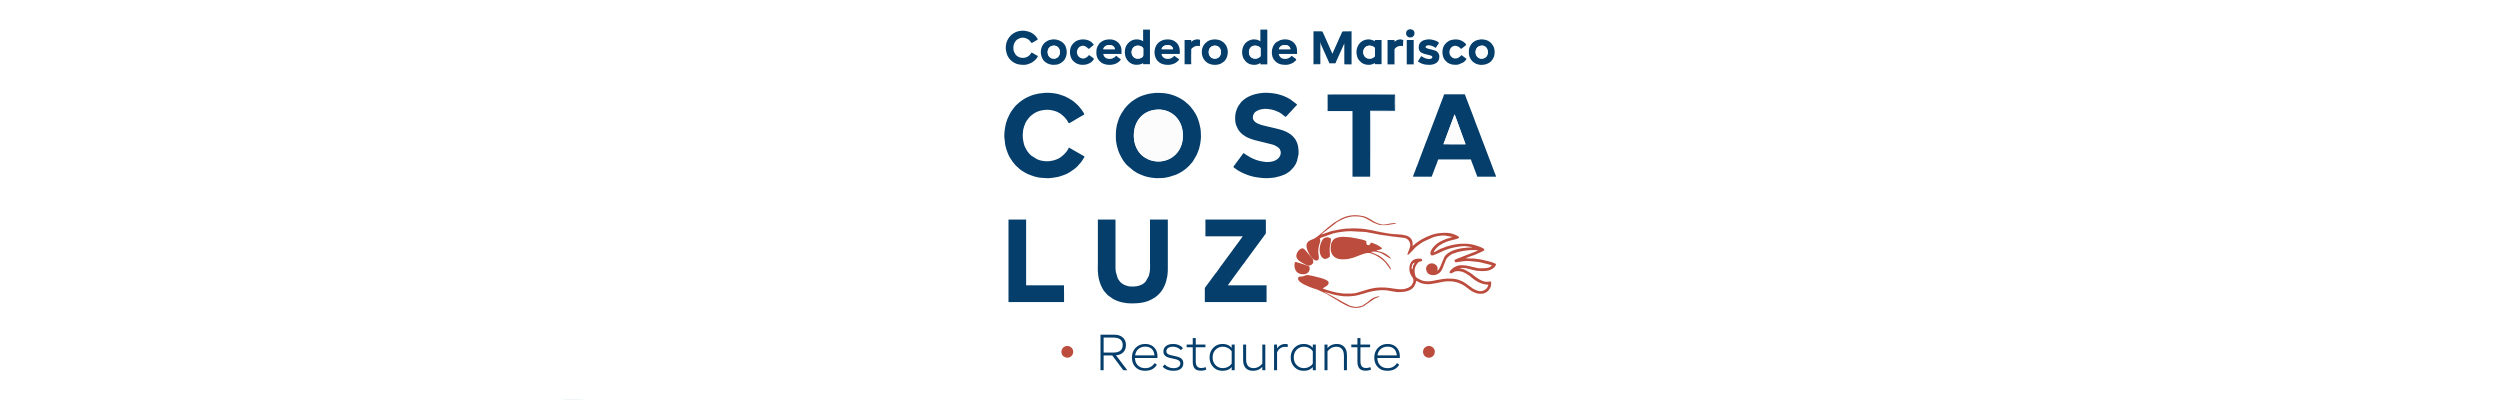 Costa Luz